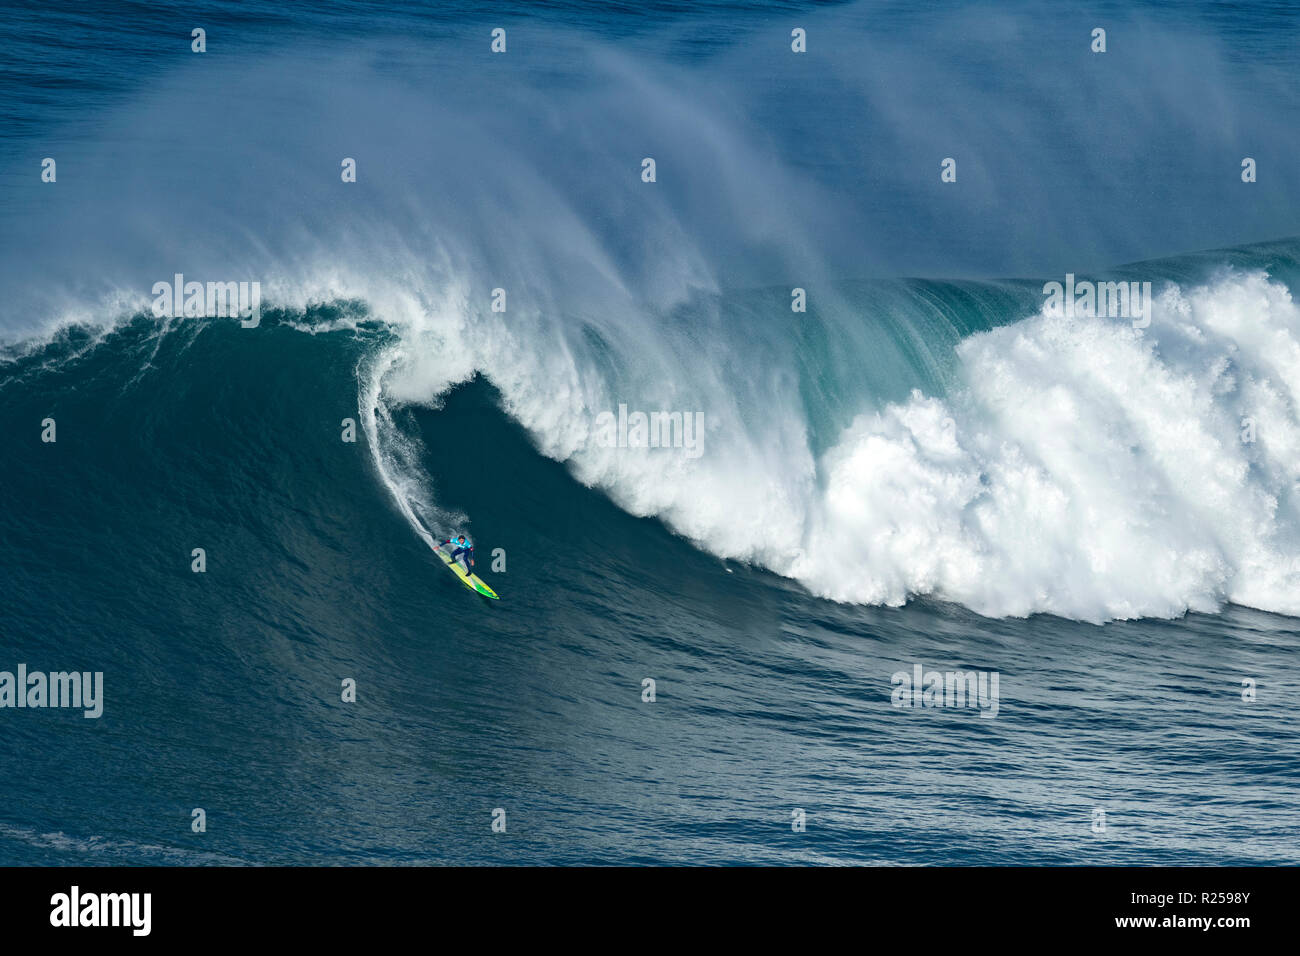 Big Wave surfer Jamie Mitchell (AUS) es visto montando una onda durante el reto de Nazaré, Portugal. La primera etapa (Nazaré Challenge) de la Liga Mundial de Surf (WSL) Big Wave Tour tuvo lugar en Nazaré, Portugal. Surfista Sudafricano Grant Baker ganó la competencia portuguesas. Foto de stock